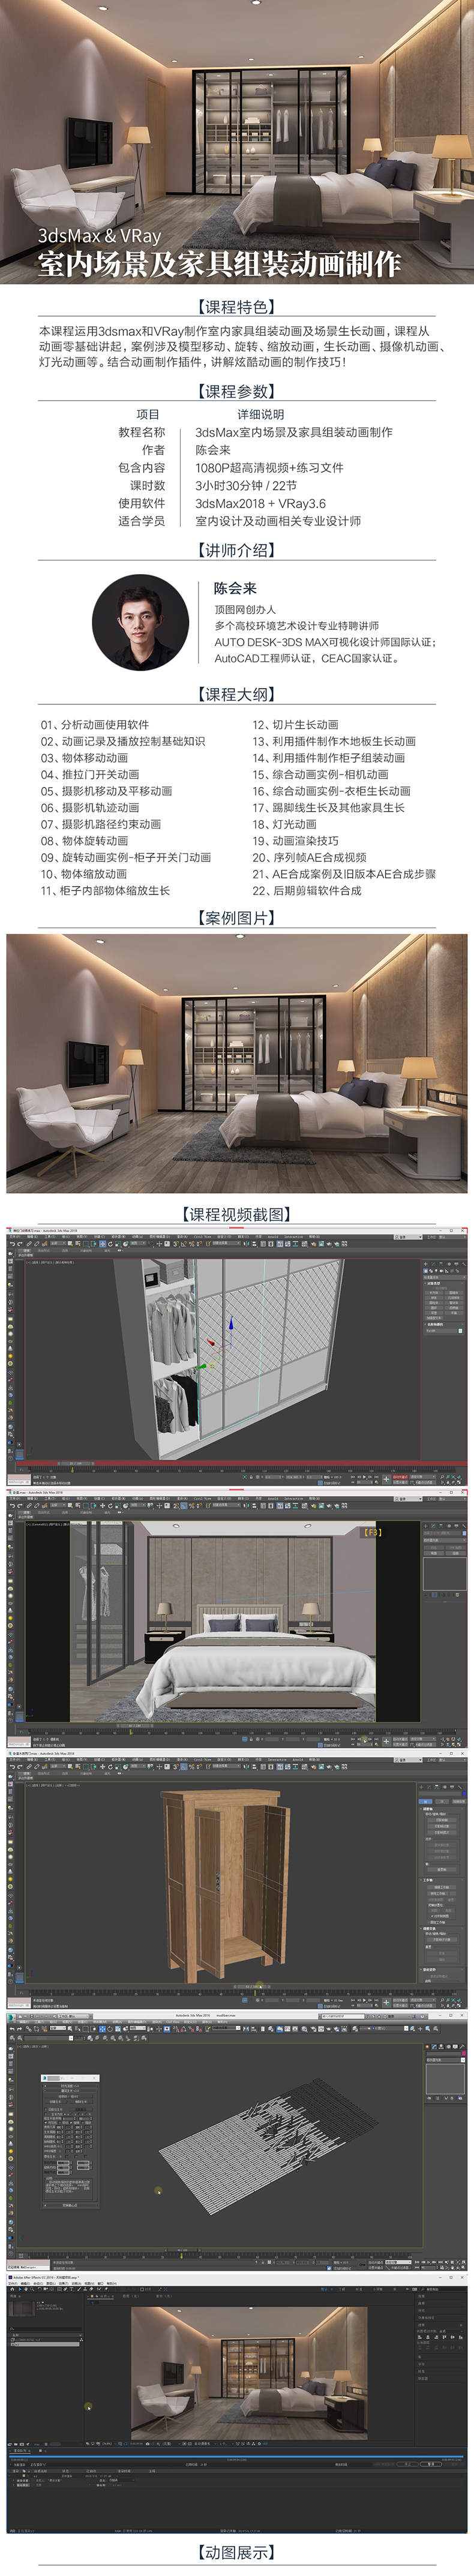 3D漫游动画【3dmax商演动画】室内场景及家具组装动画教程